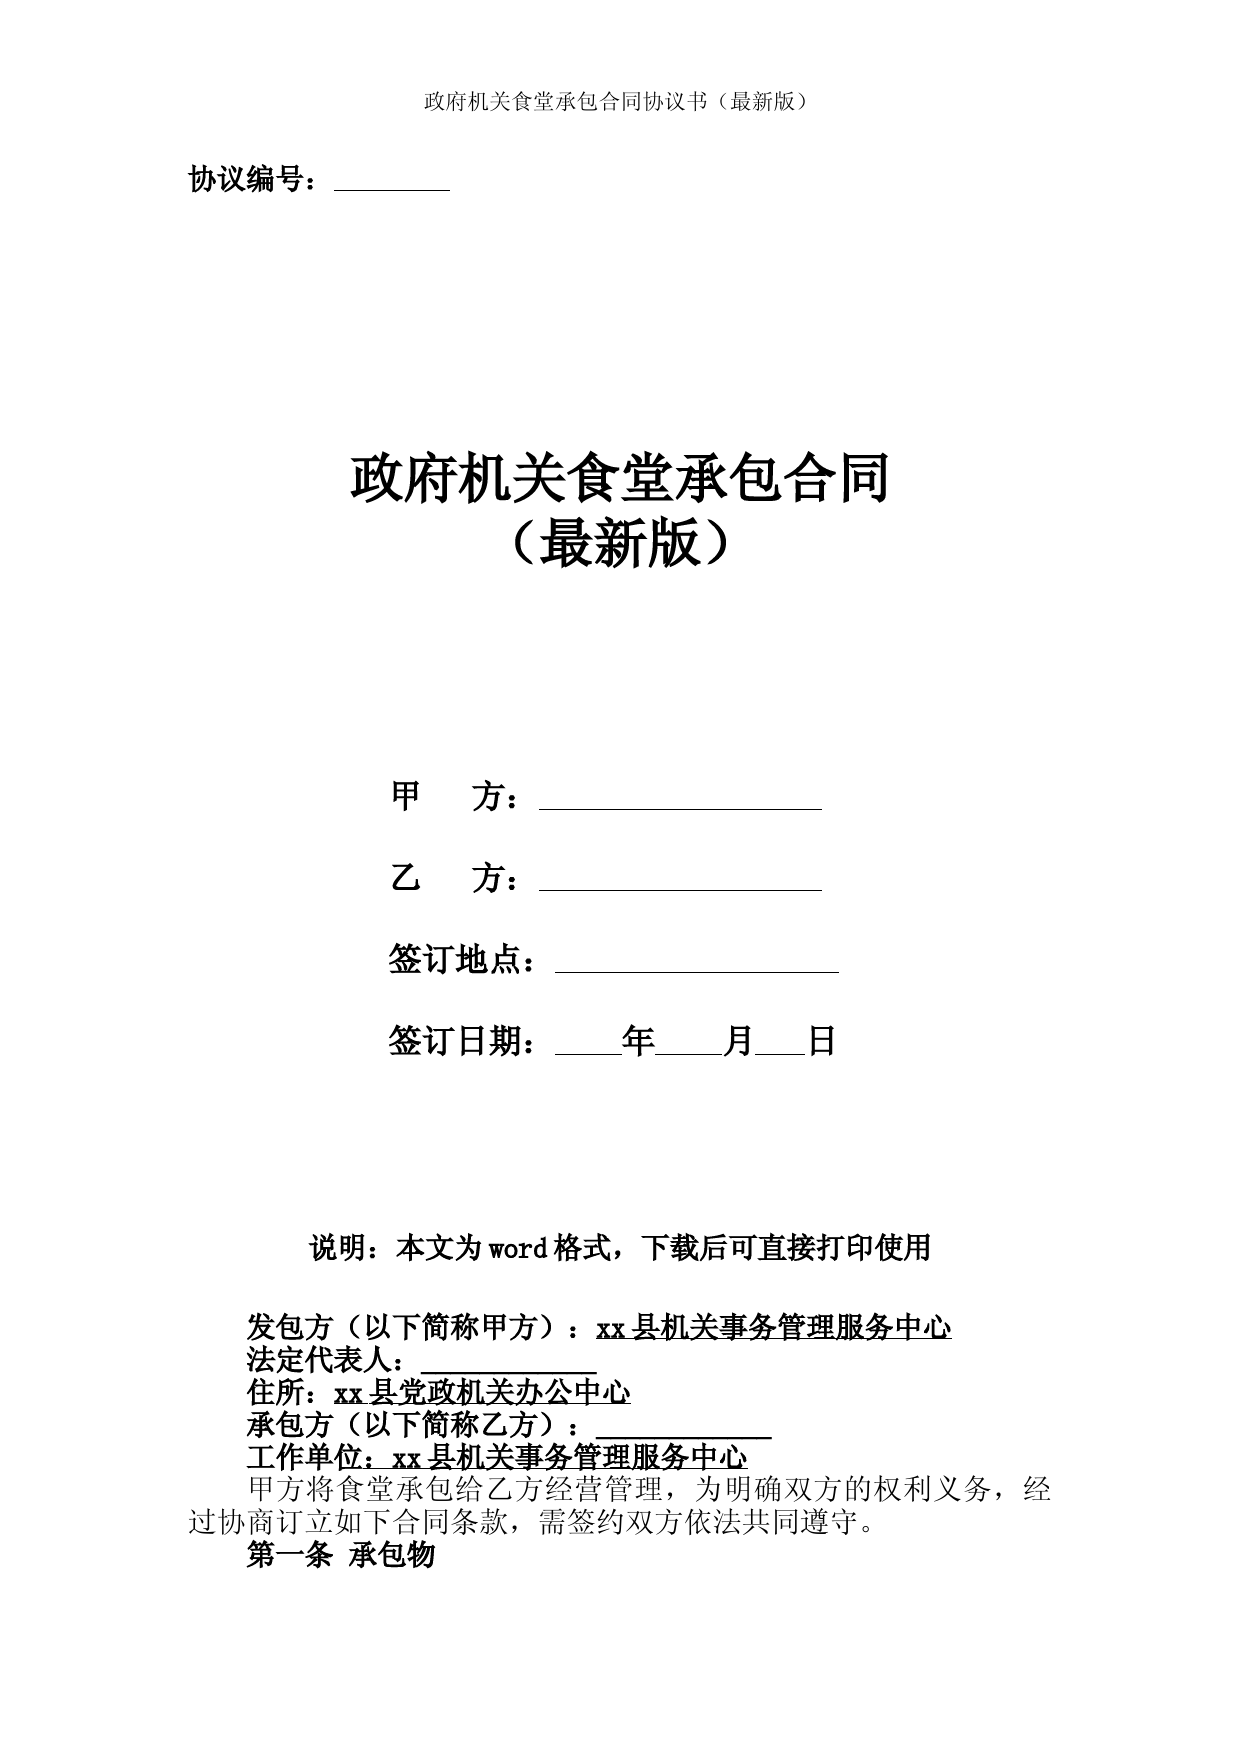 政府机关食堂承包合同协议书(最新版)